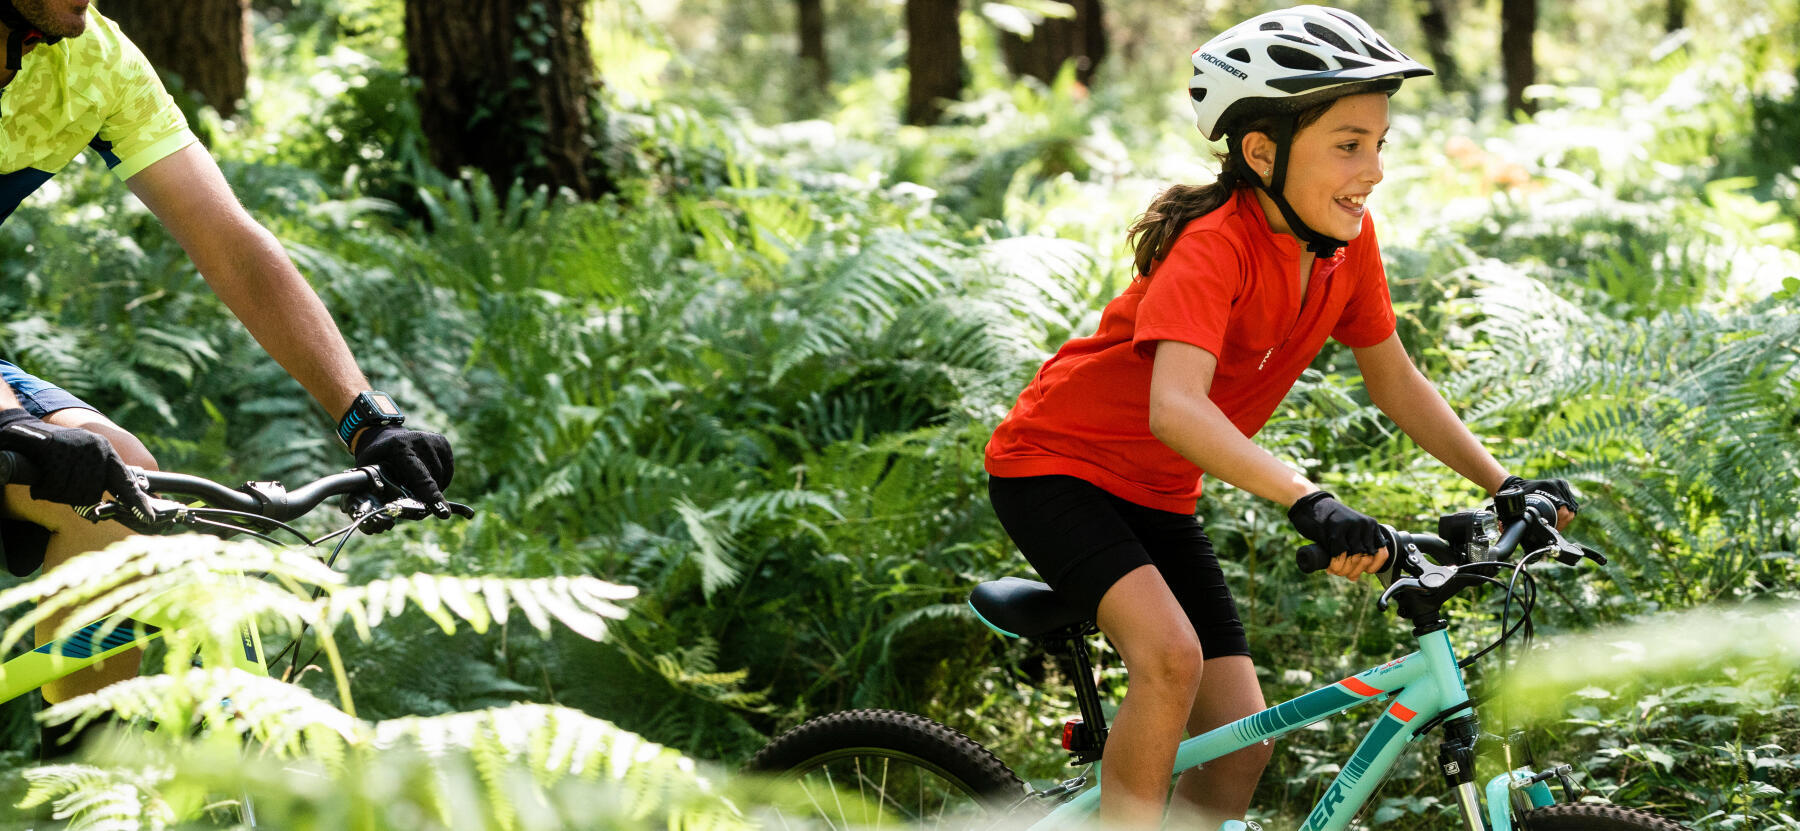 En flicka cyklar i skogsterräng